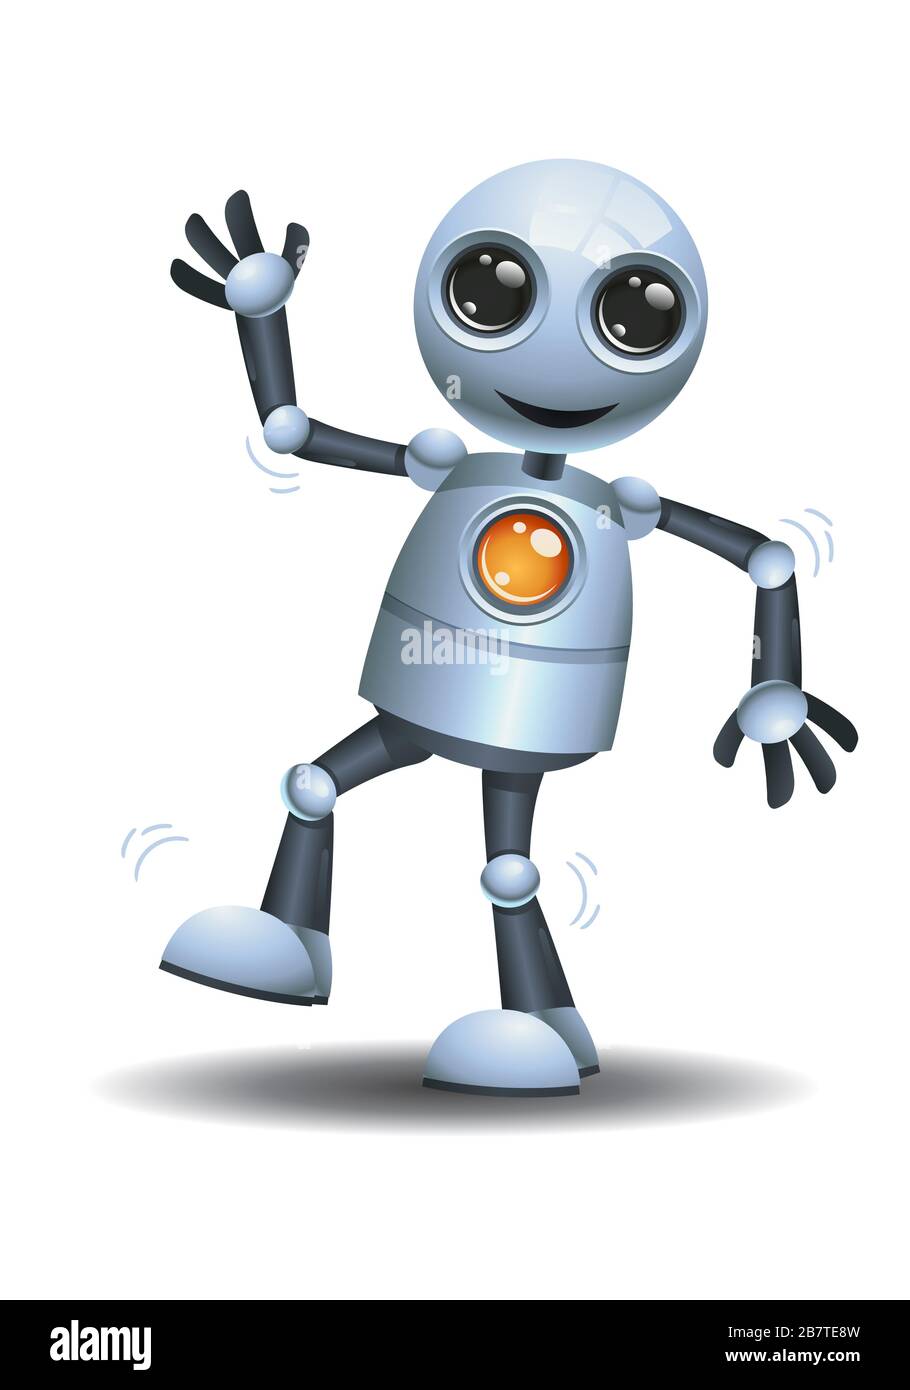 Robot dance immagini e fotografie stock ad alta risoluzione - Alamy